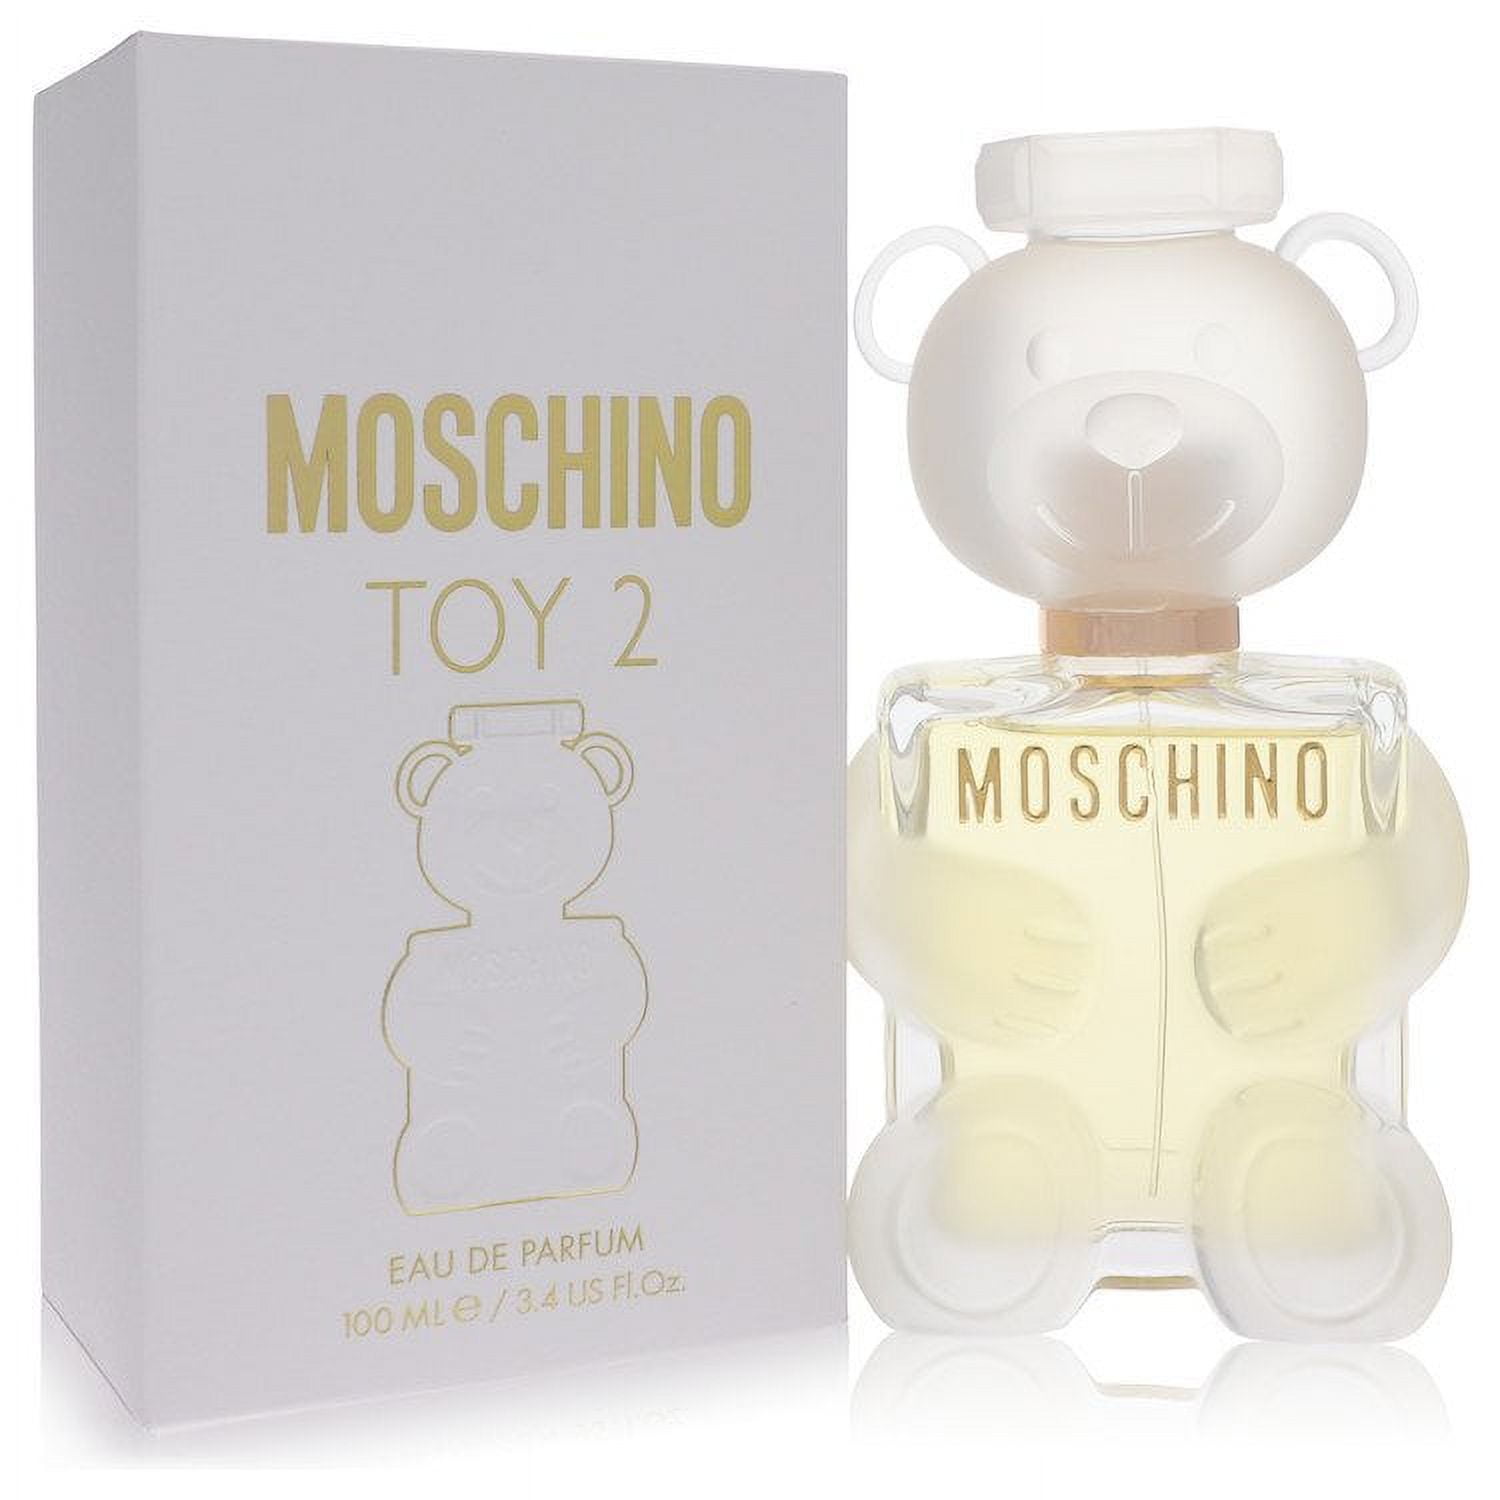 Moschino Toy 2 by Moschino Eau De Parfum Spray 3.4 oz for Women - Brand ...